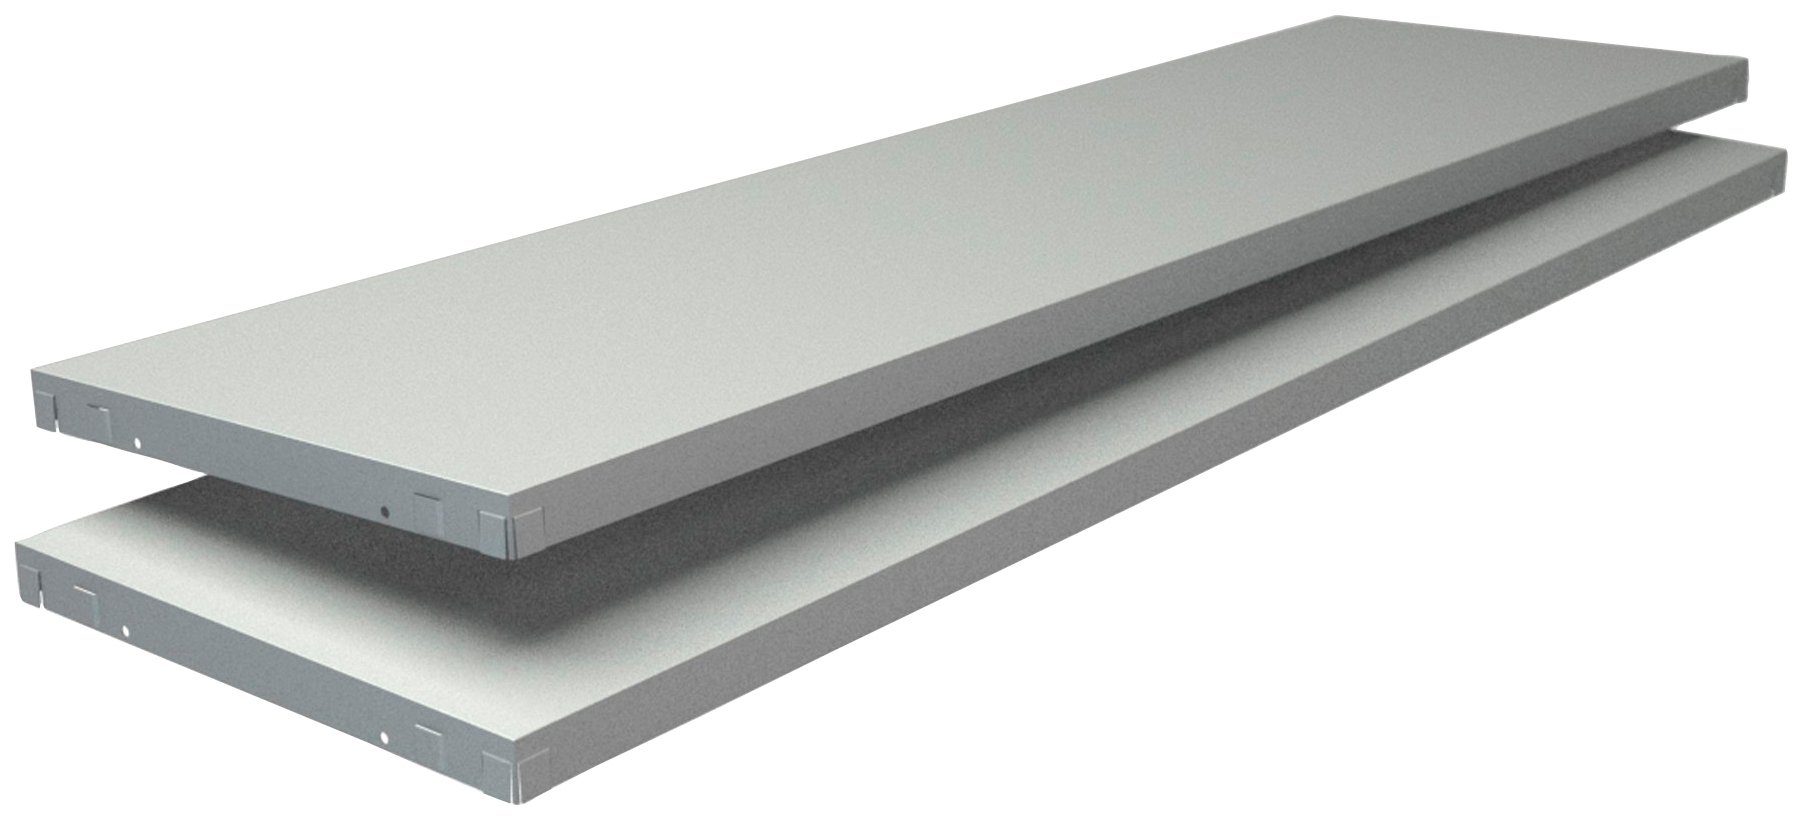 SCHULTE Regalwelt Regalelement Stecksystem-Fachboden mm weiß, 2 Stück 1200x350 PowerMax